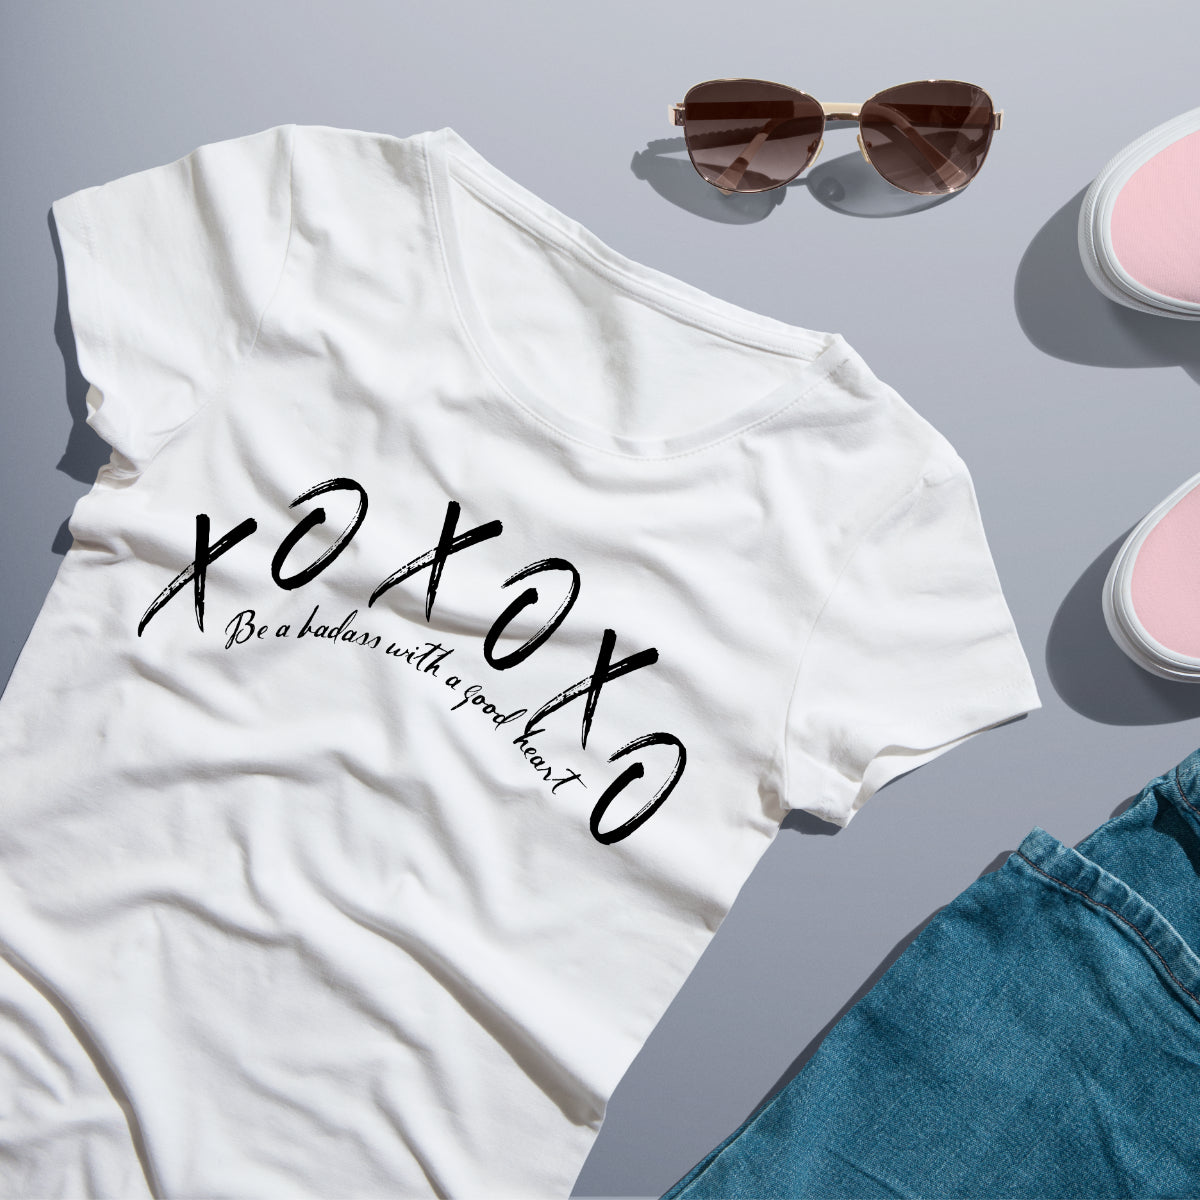 XOXO Shirt And Hoodie - ABeautifulShirt